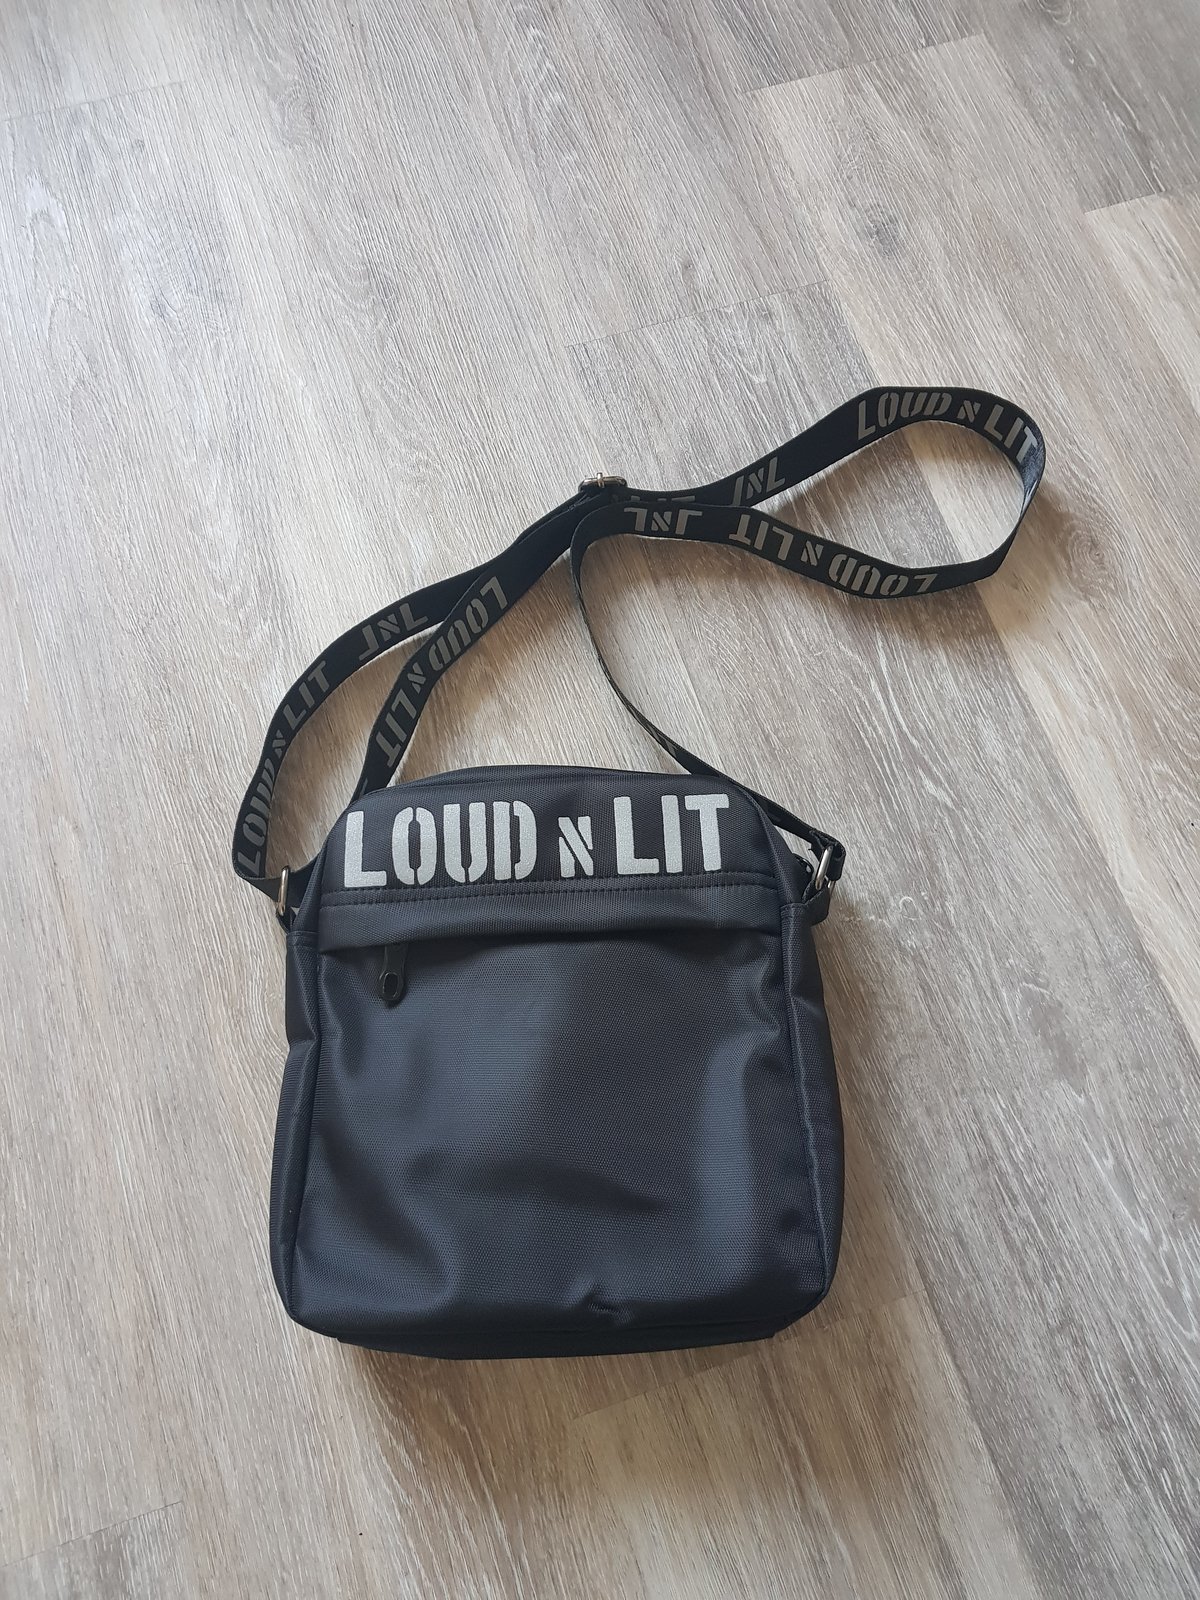 Image of Loud N Lit Sidebag